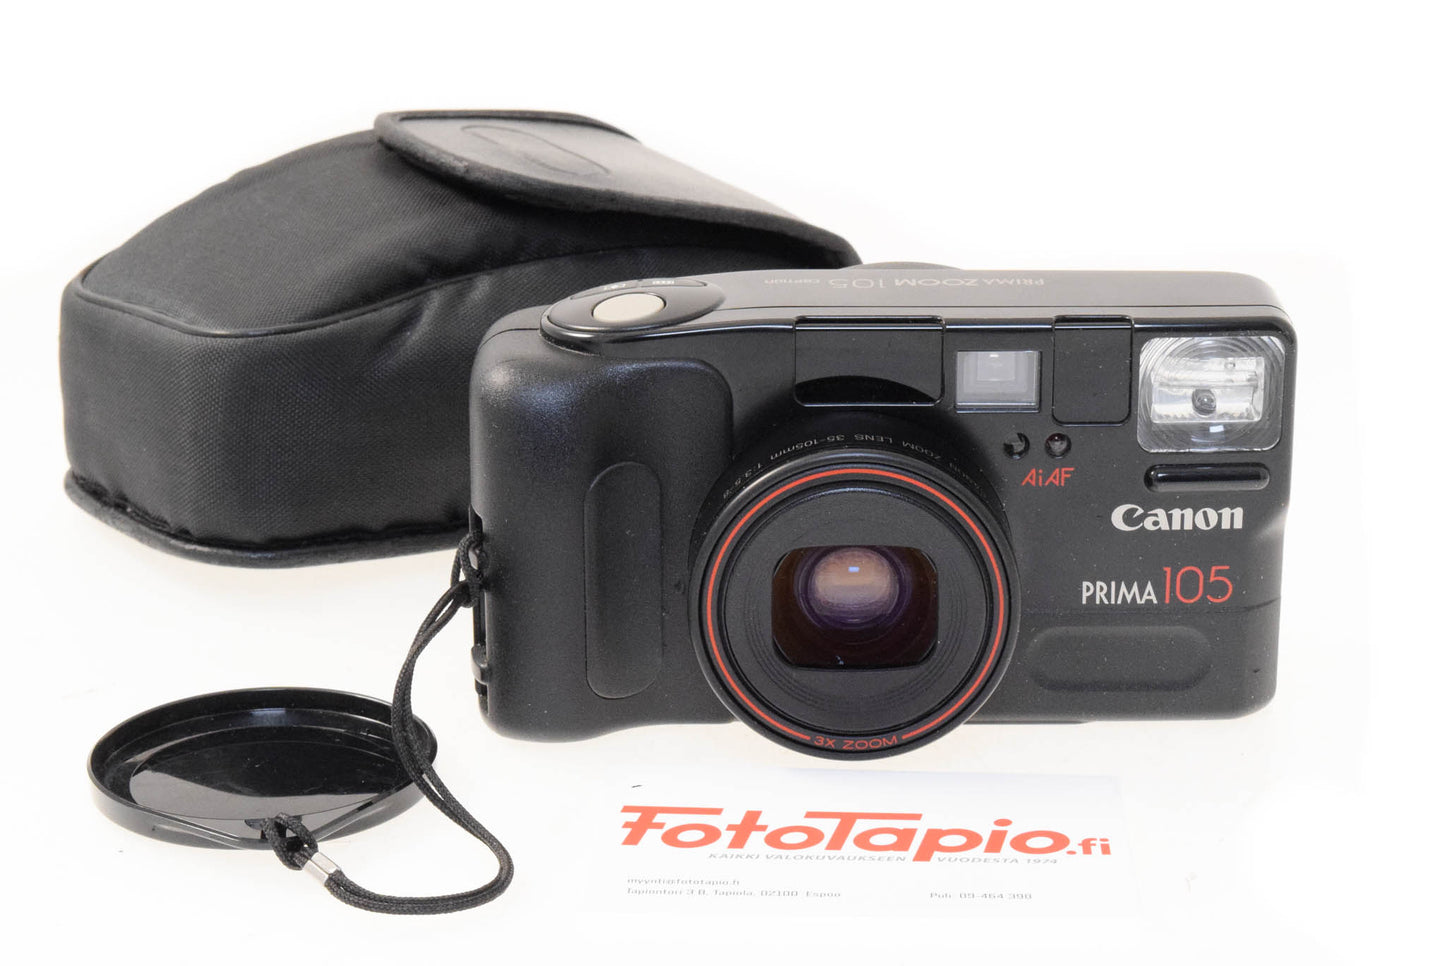 Canon Prima Zoom 105 Caption - Camera